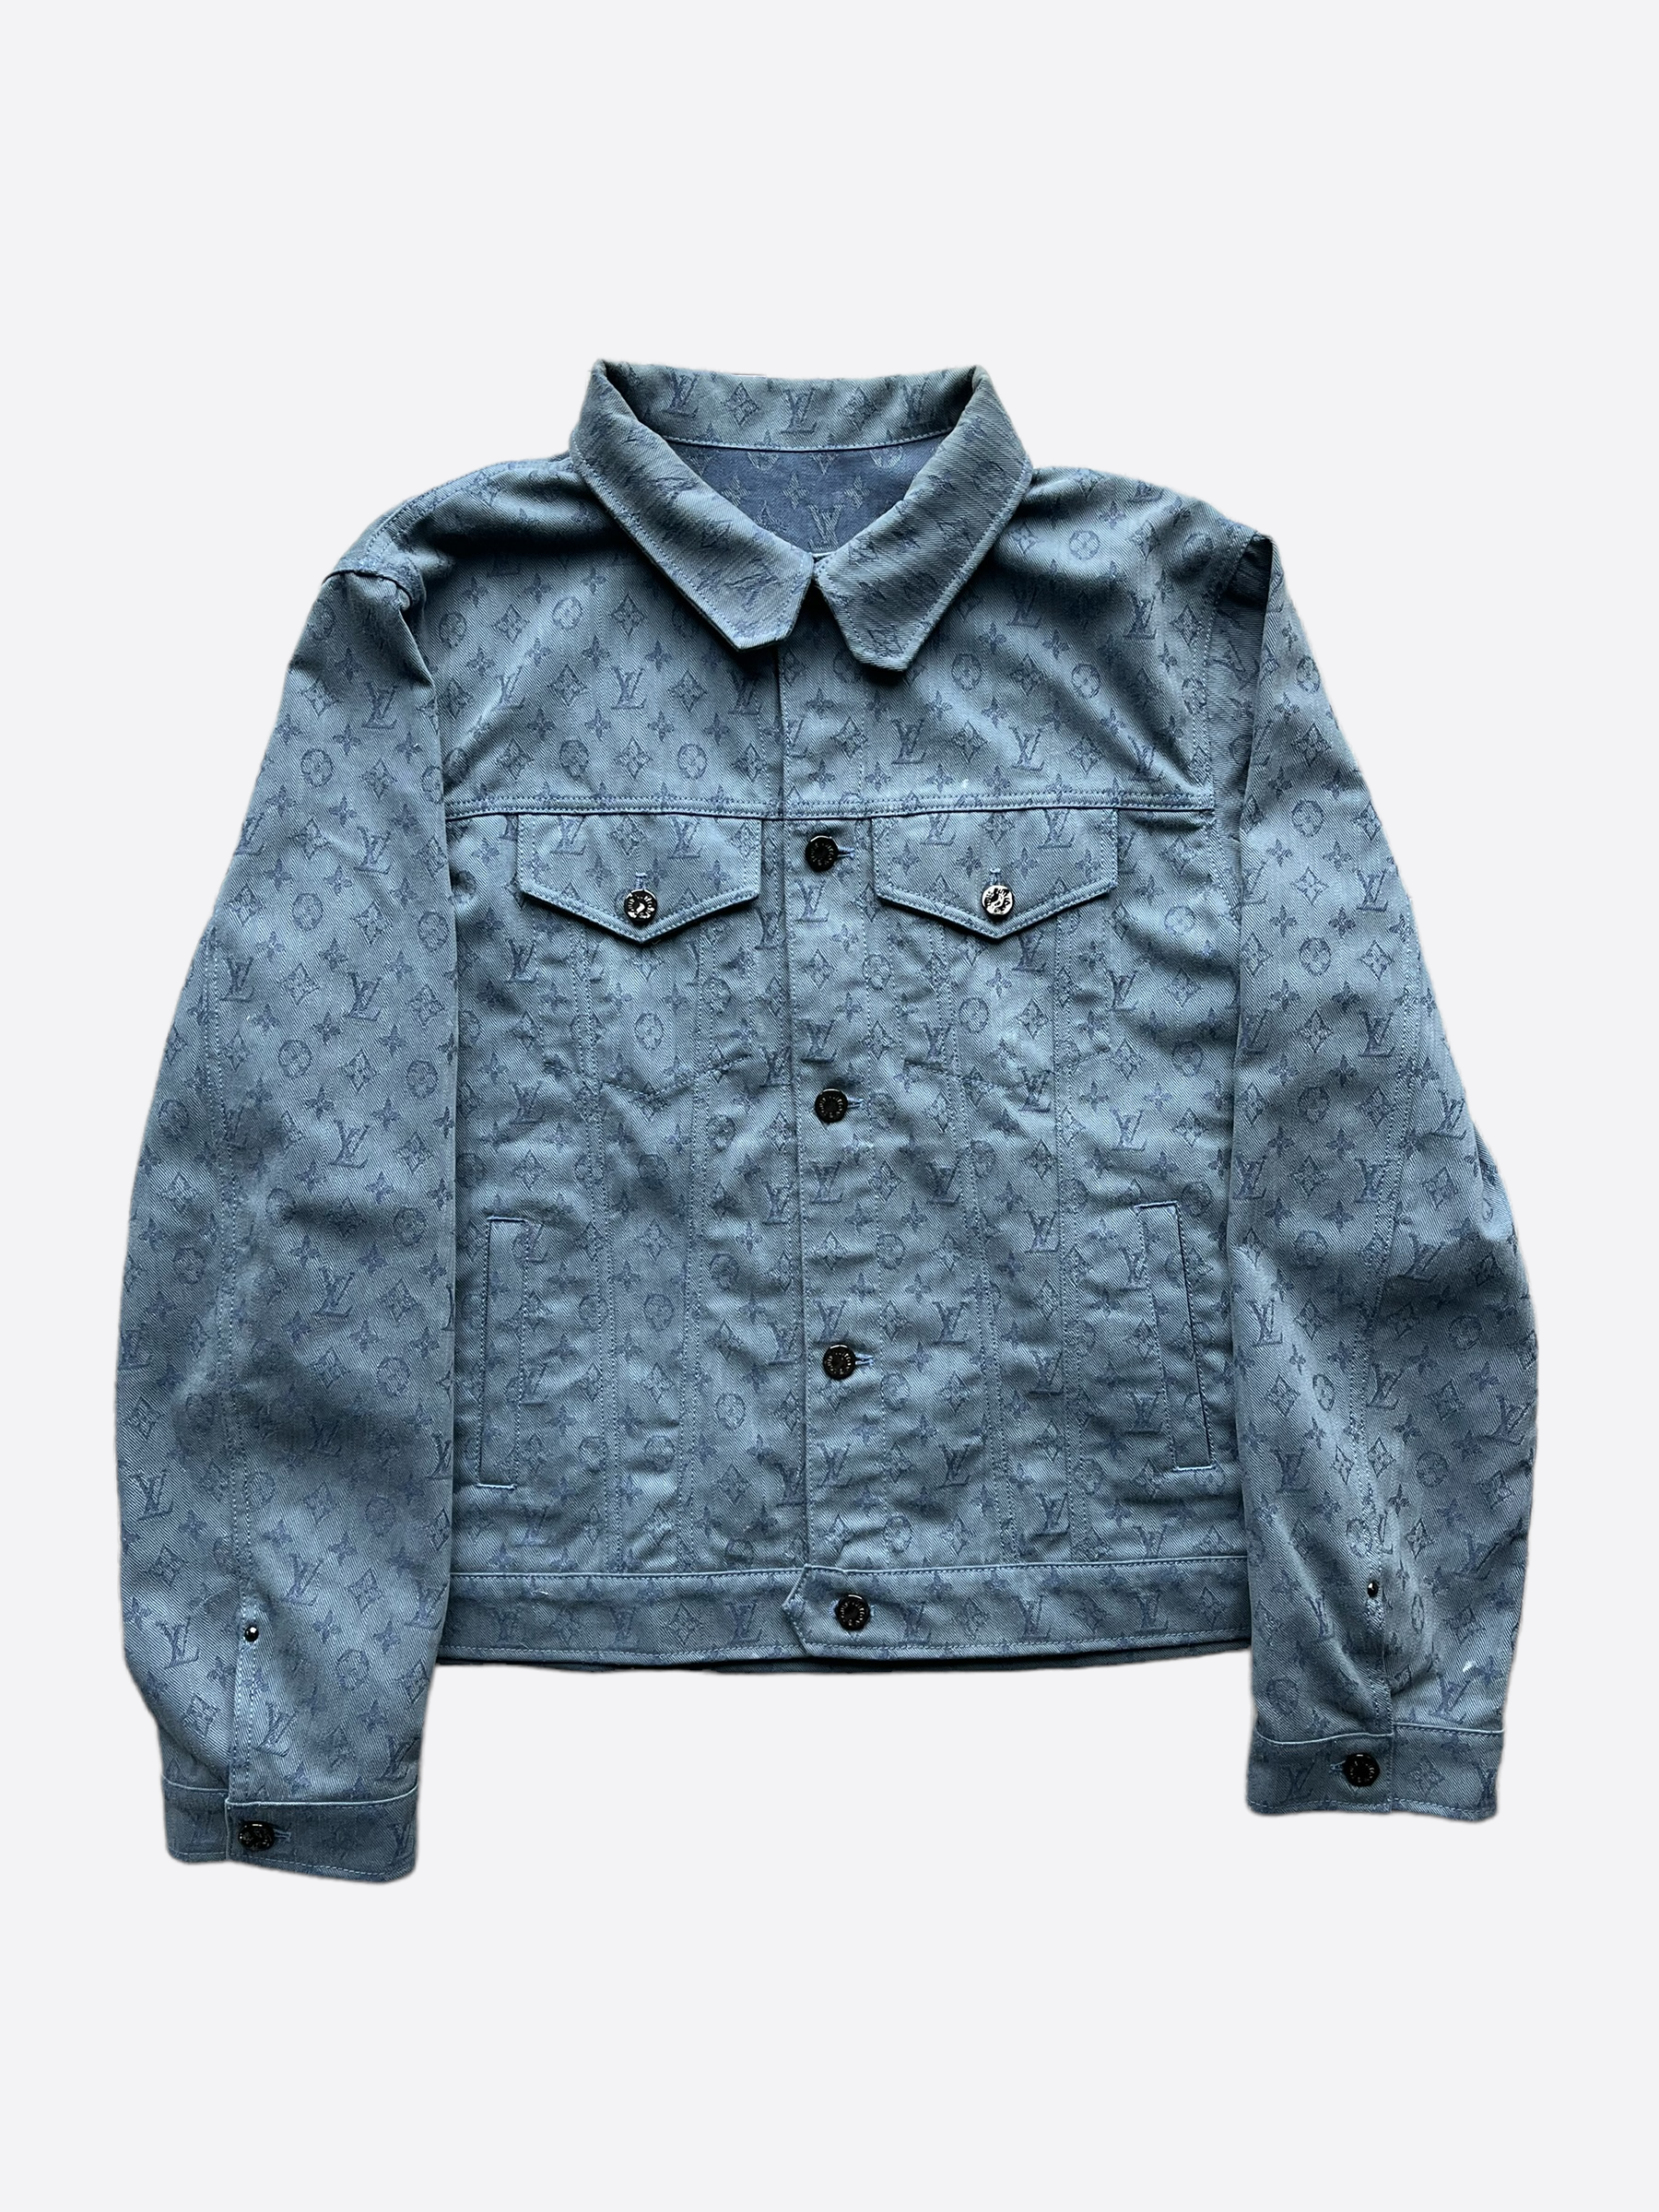 Louis Vuitton, Jackets & Coats, Louis Vuitton Quilted Denim Jacket Sz 36